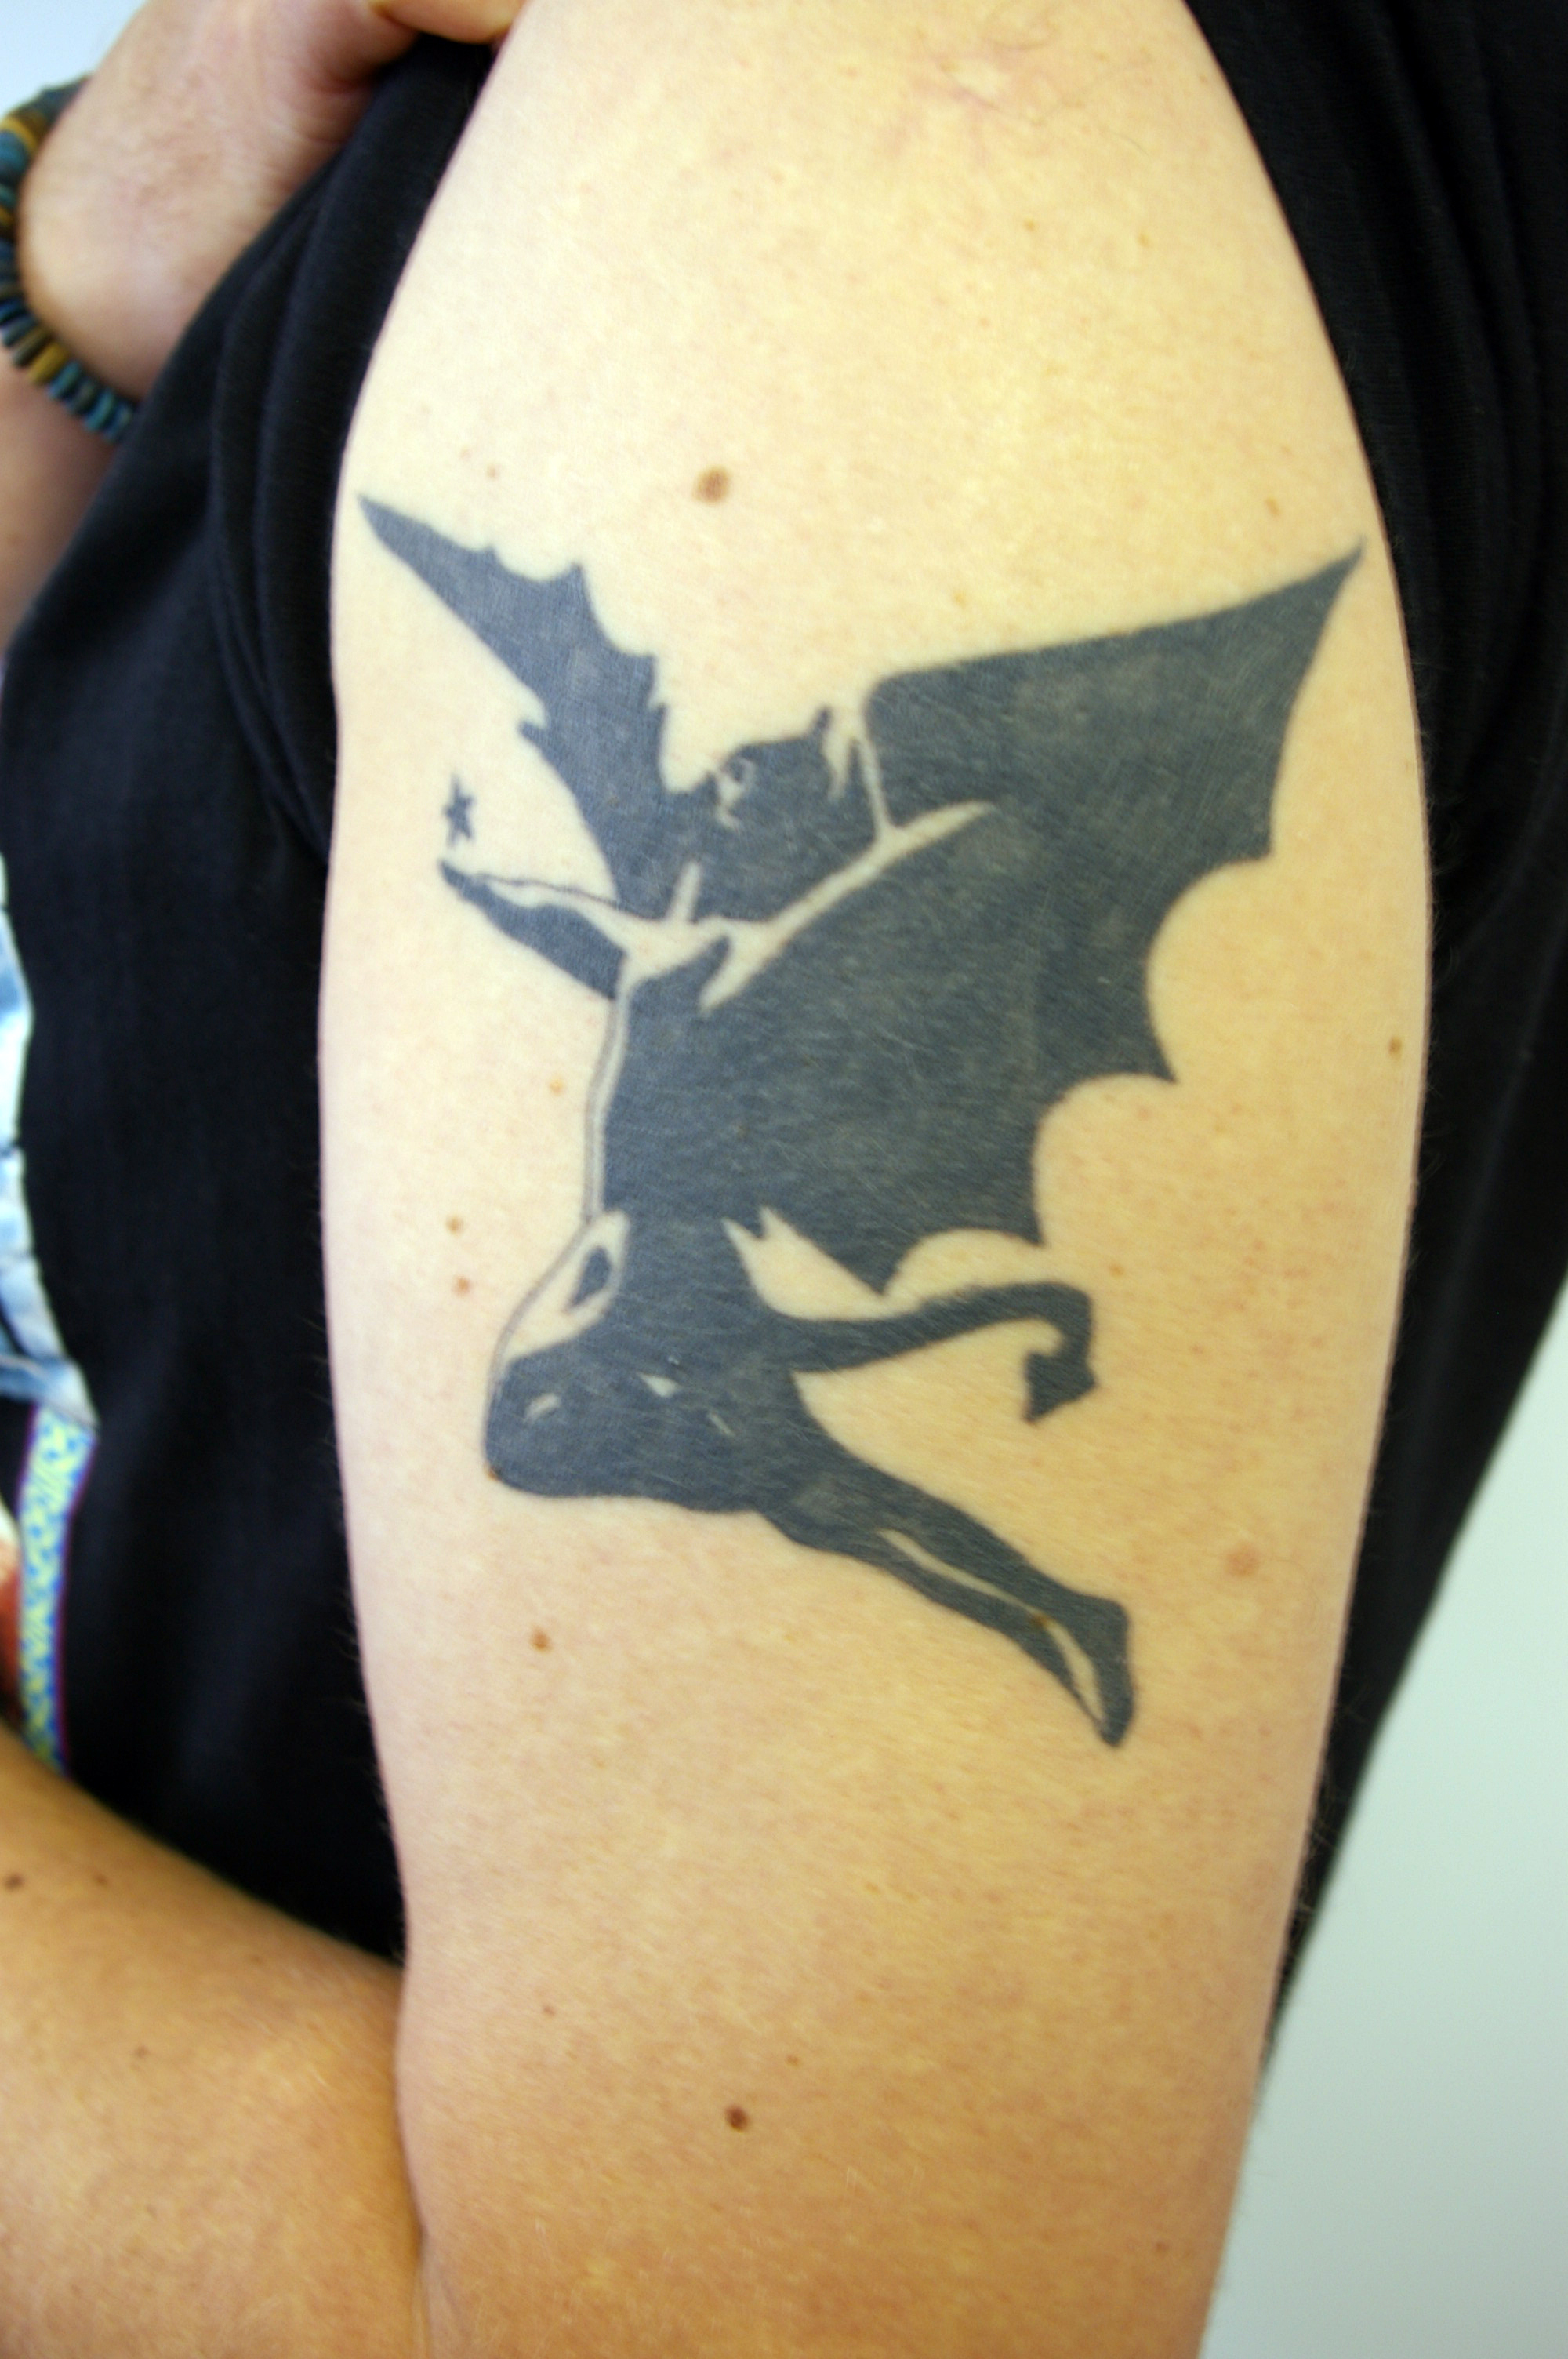 Black Sabbath tattoo.